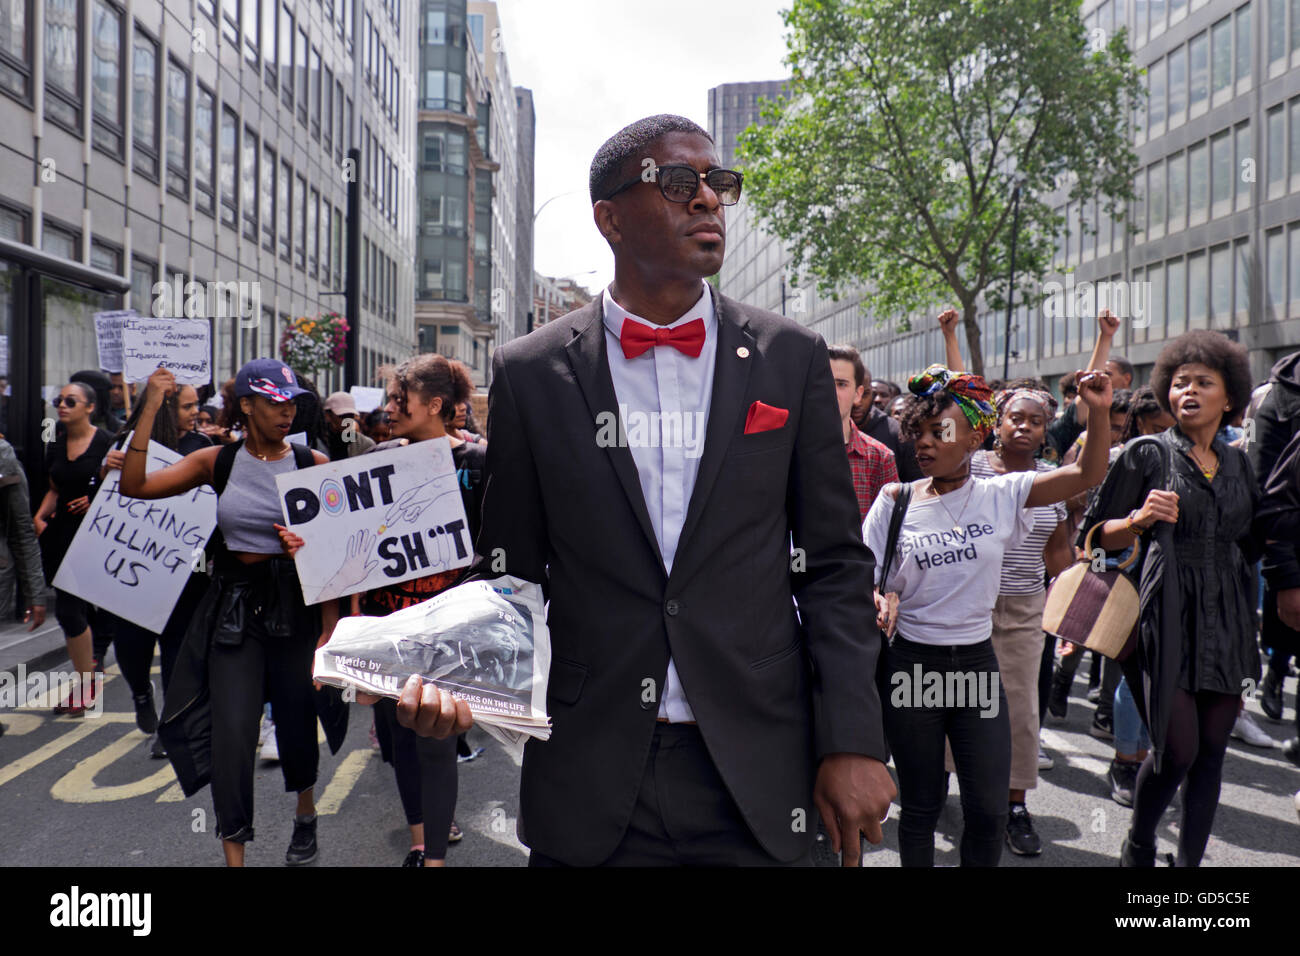 "Schwarze Leben Matter" mehr als tausend Menschen marschierten durch London singen "Hands up nicht schießen".  Die schwarze Gemeinschaft war empört über US-Polizeibrutalität nach Tötung von zwei schwarze Männer - einer in Minnesota und in Louisiana. Stockfoto